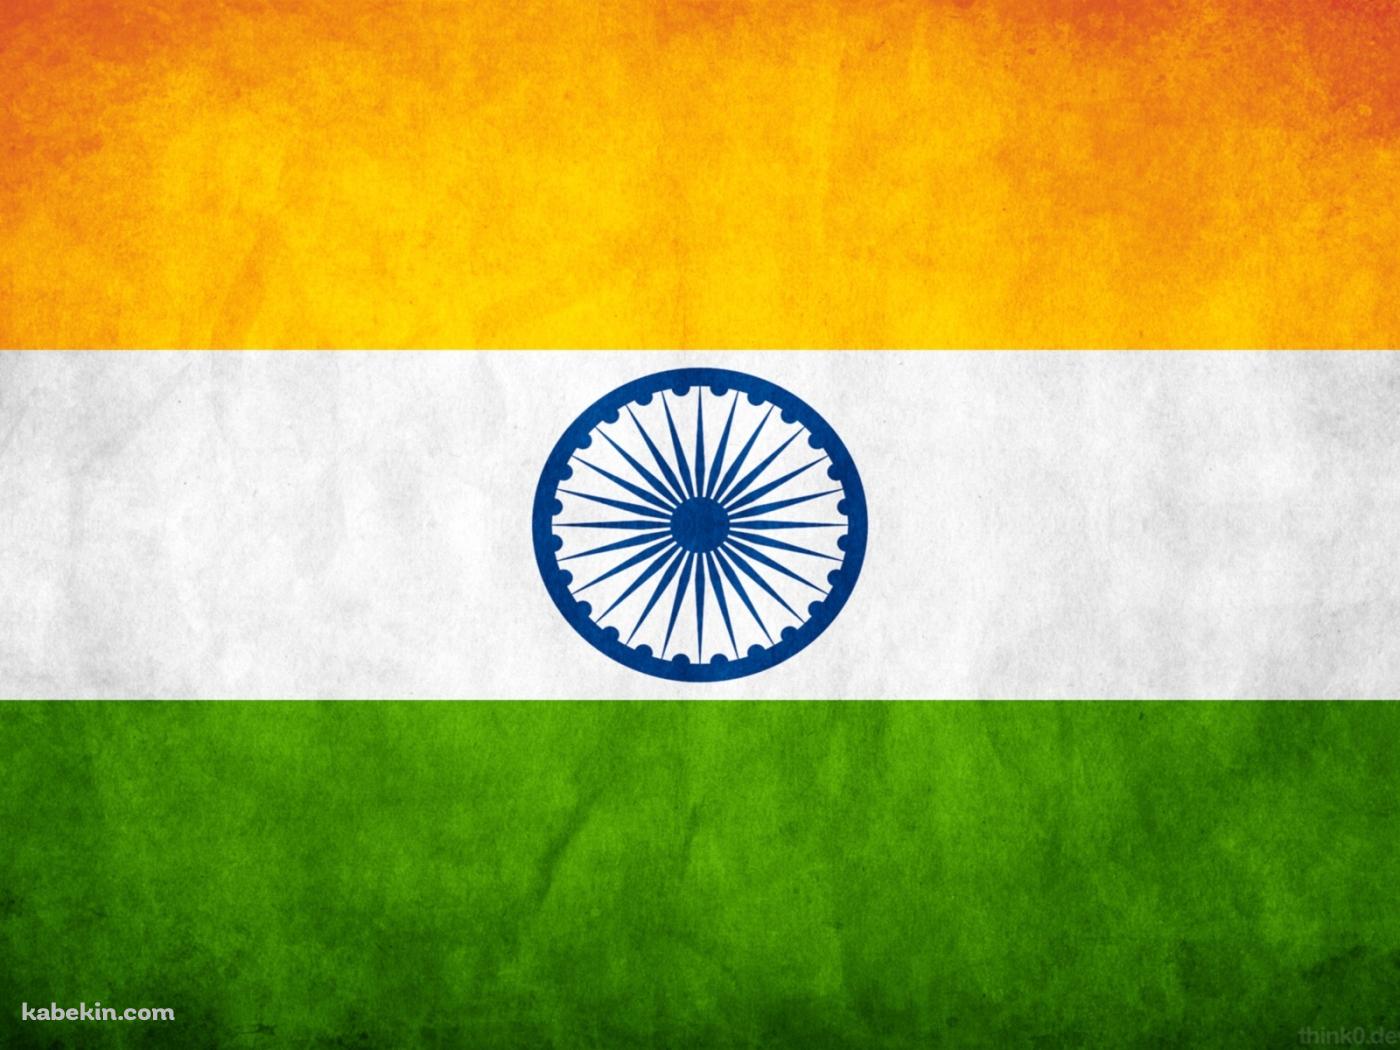 インドの国旗の壁紙(1400px x 1050px) 高画質 PC・デスクトップ用